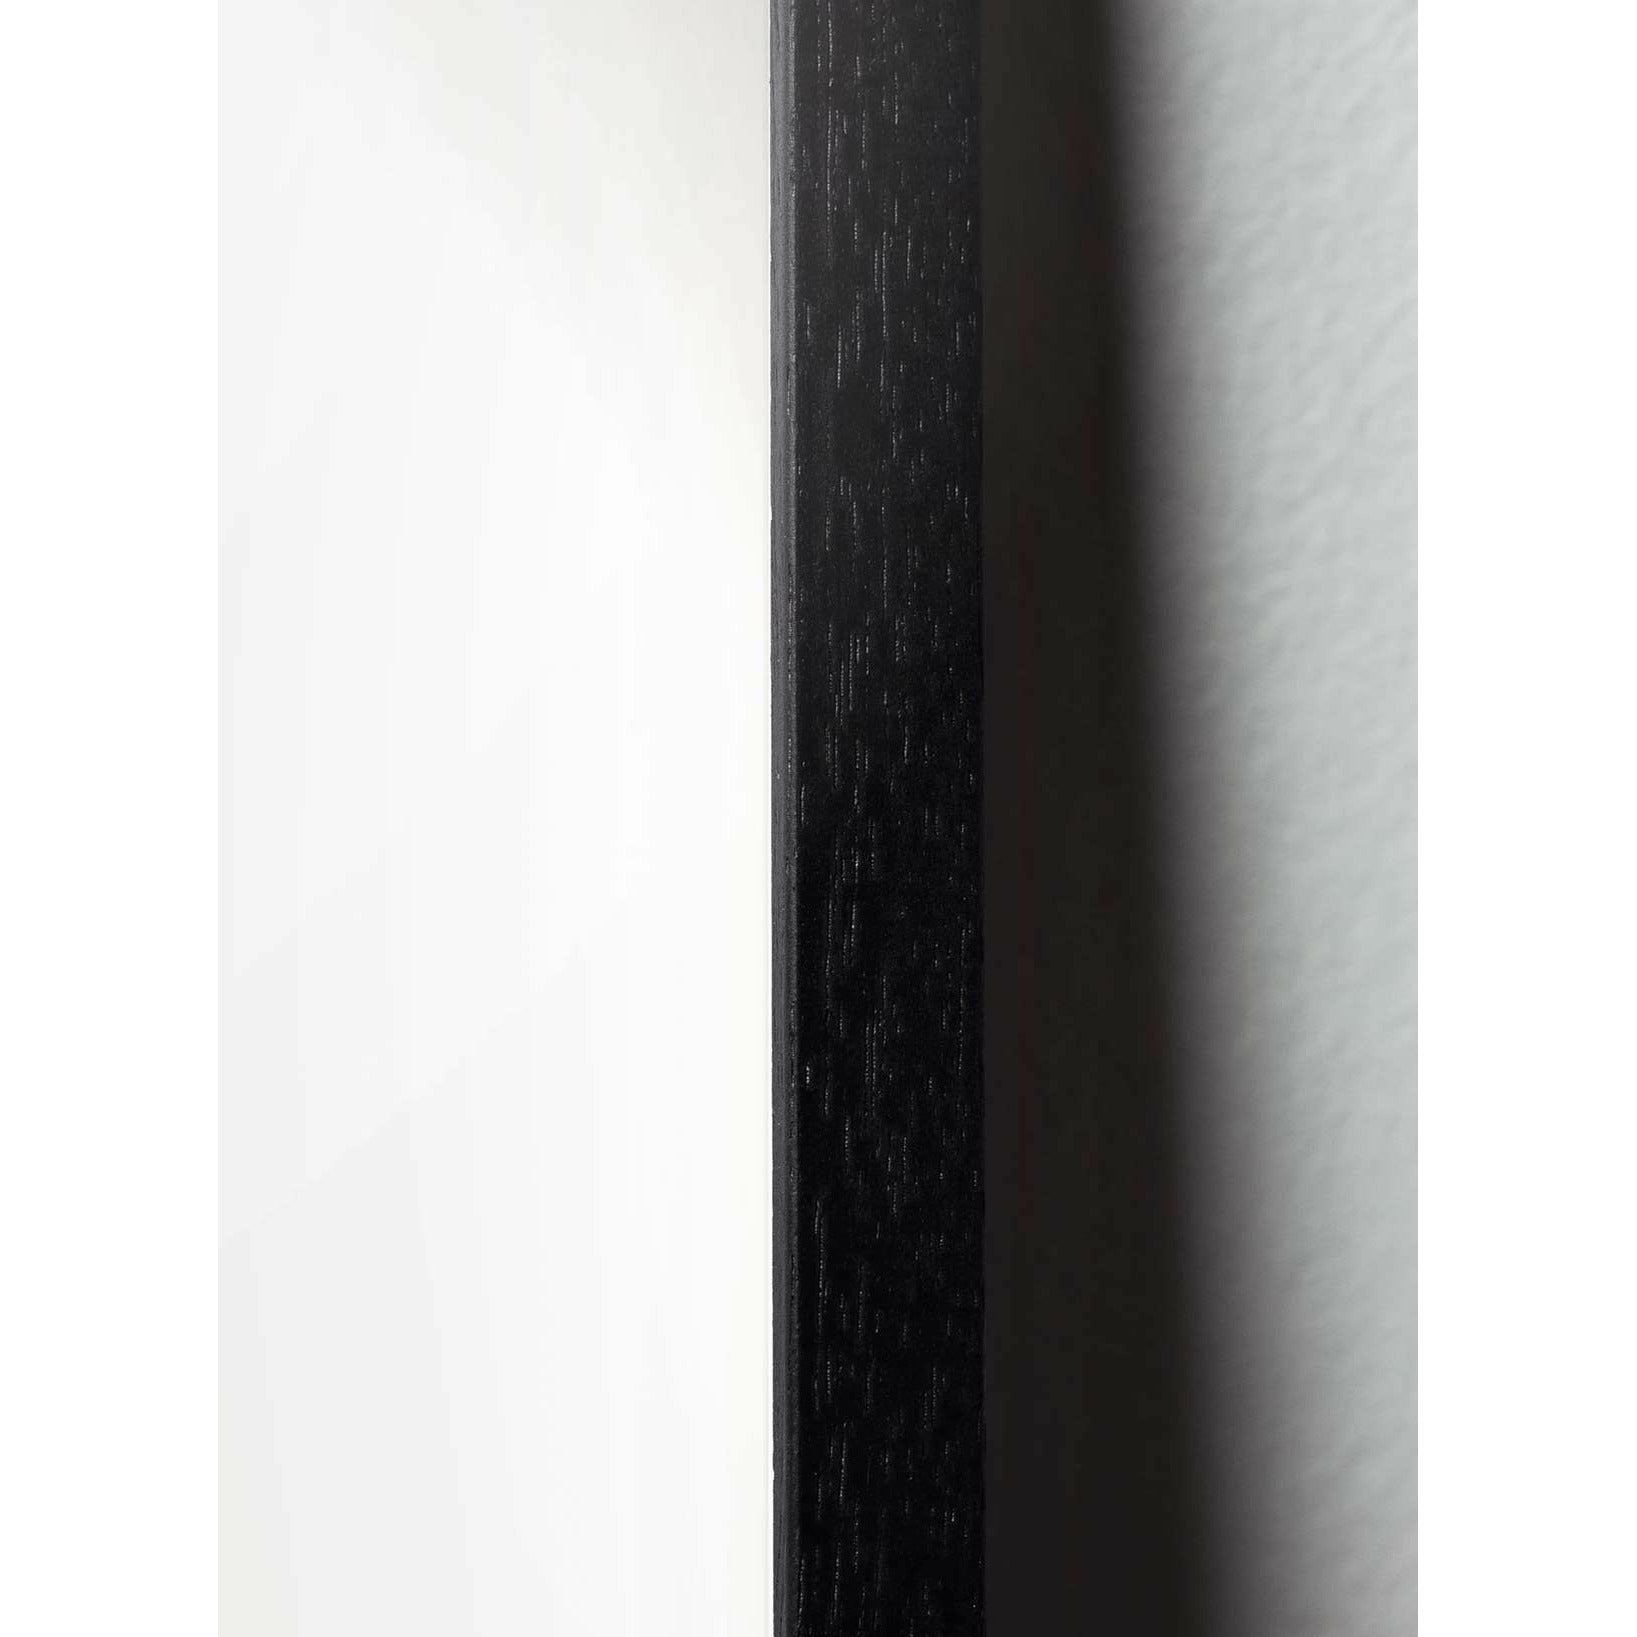 Póster clásico de huevo de creación, marco en madera lacada negra A5, fondo azul oscuro